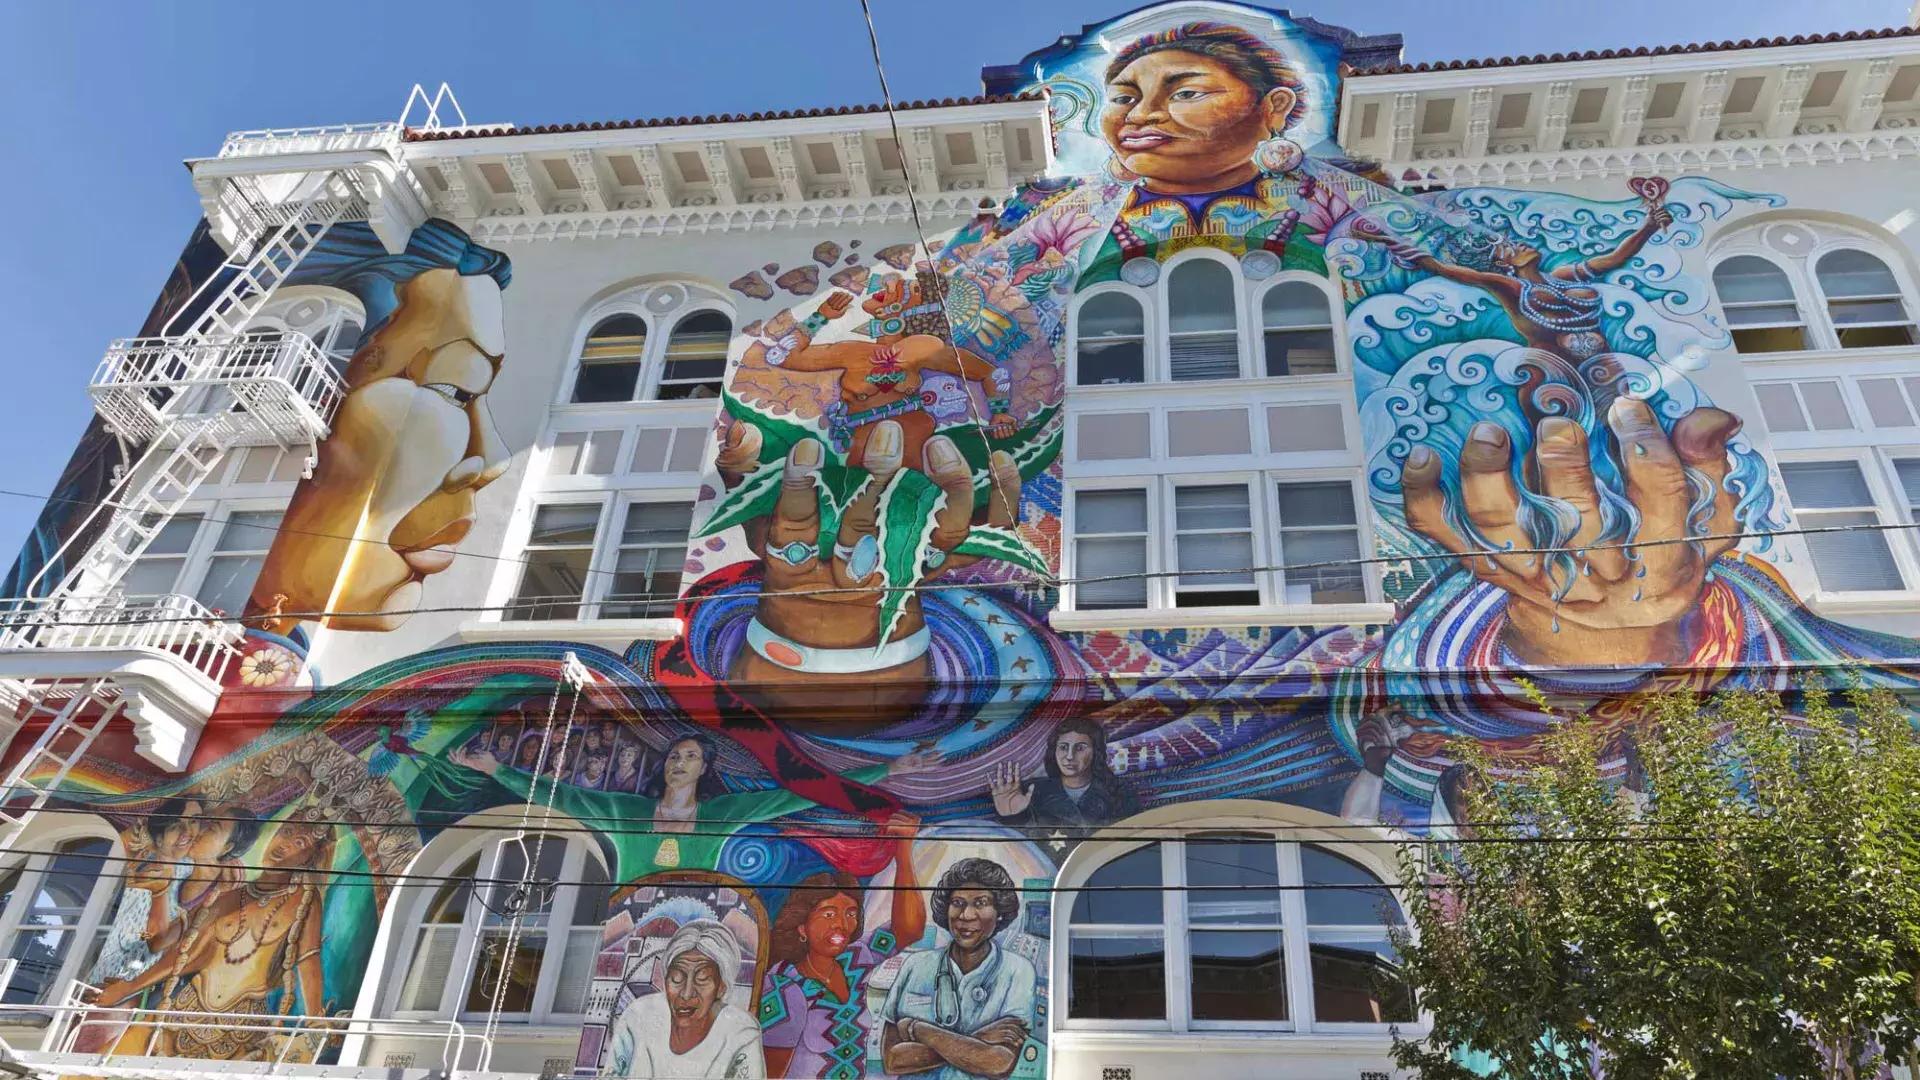 贝博体彩app教会区妇女大楼的一边覆盖着一幅彩色的大型壁画.